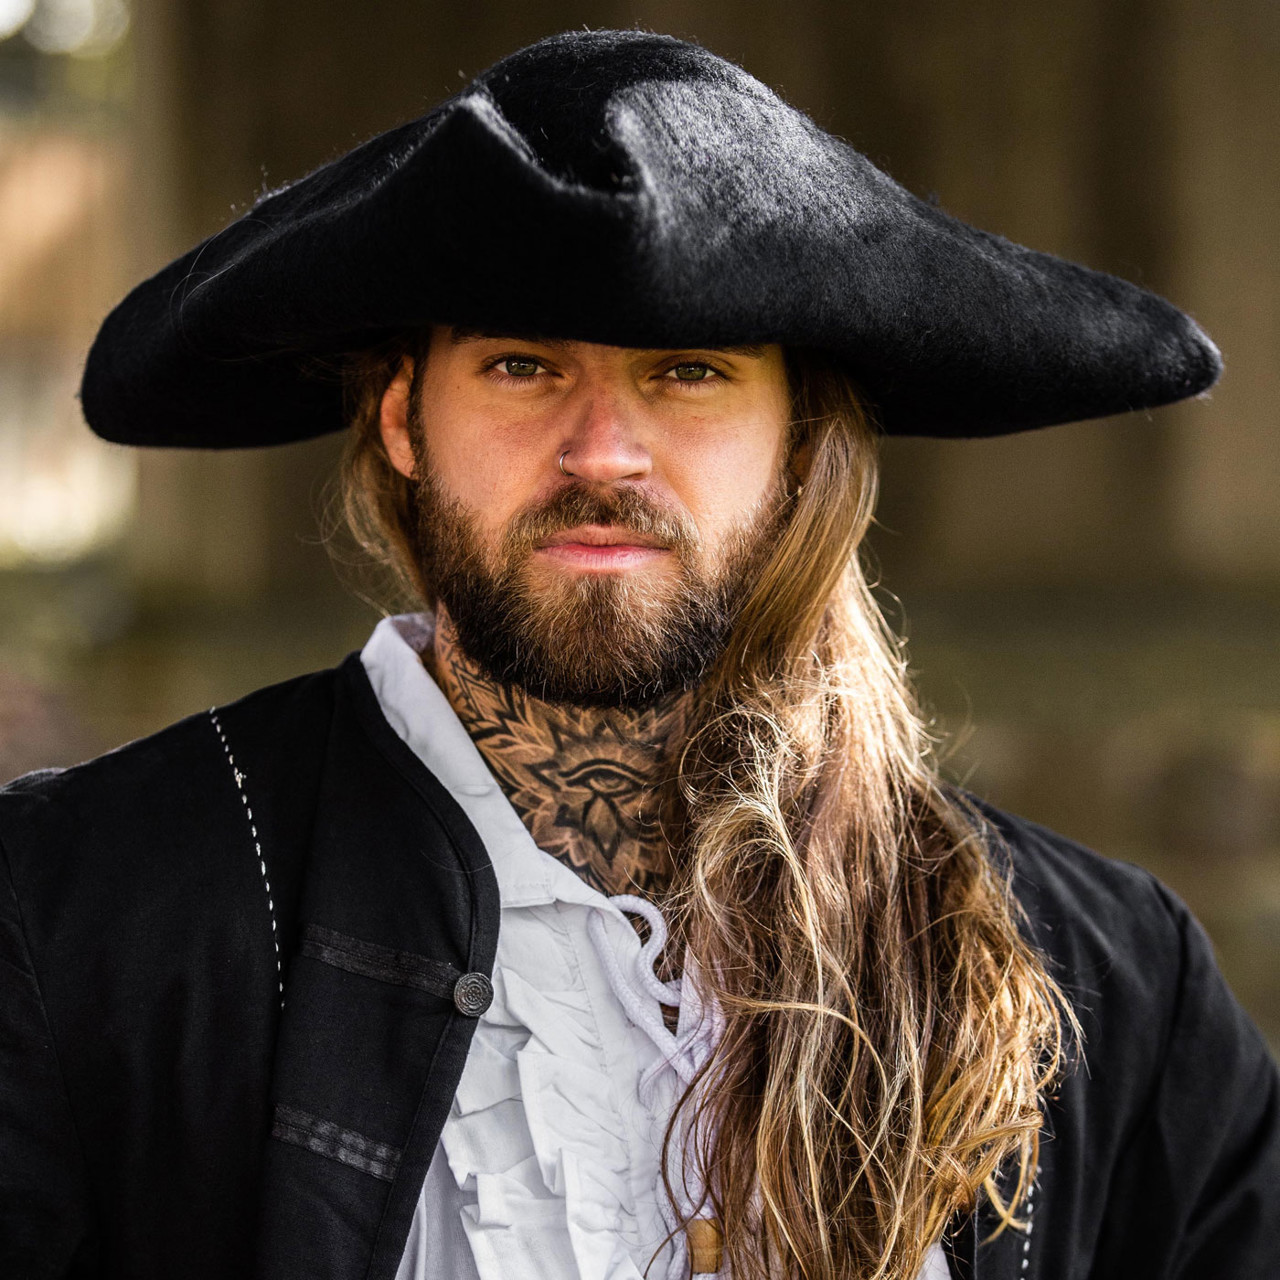 Piratin Kostüm - Piraten Accessoires - Piraten Kleidung für Sie & Ihn